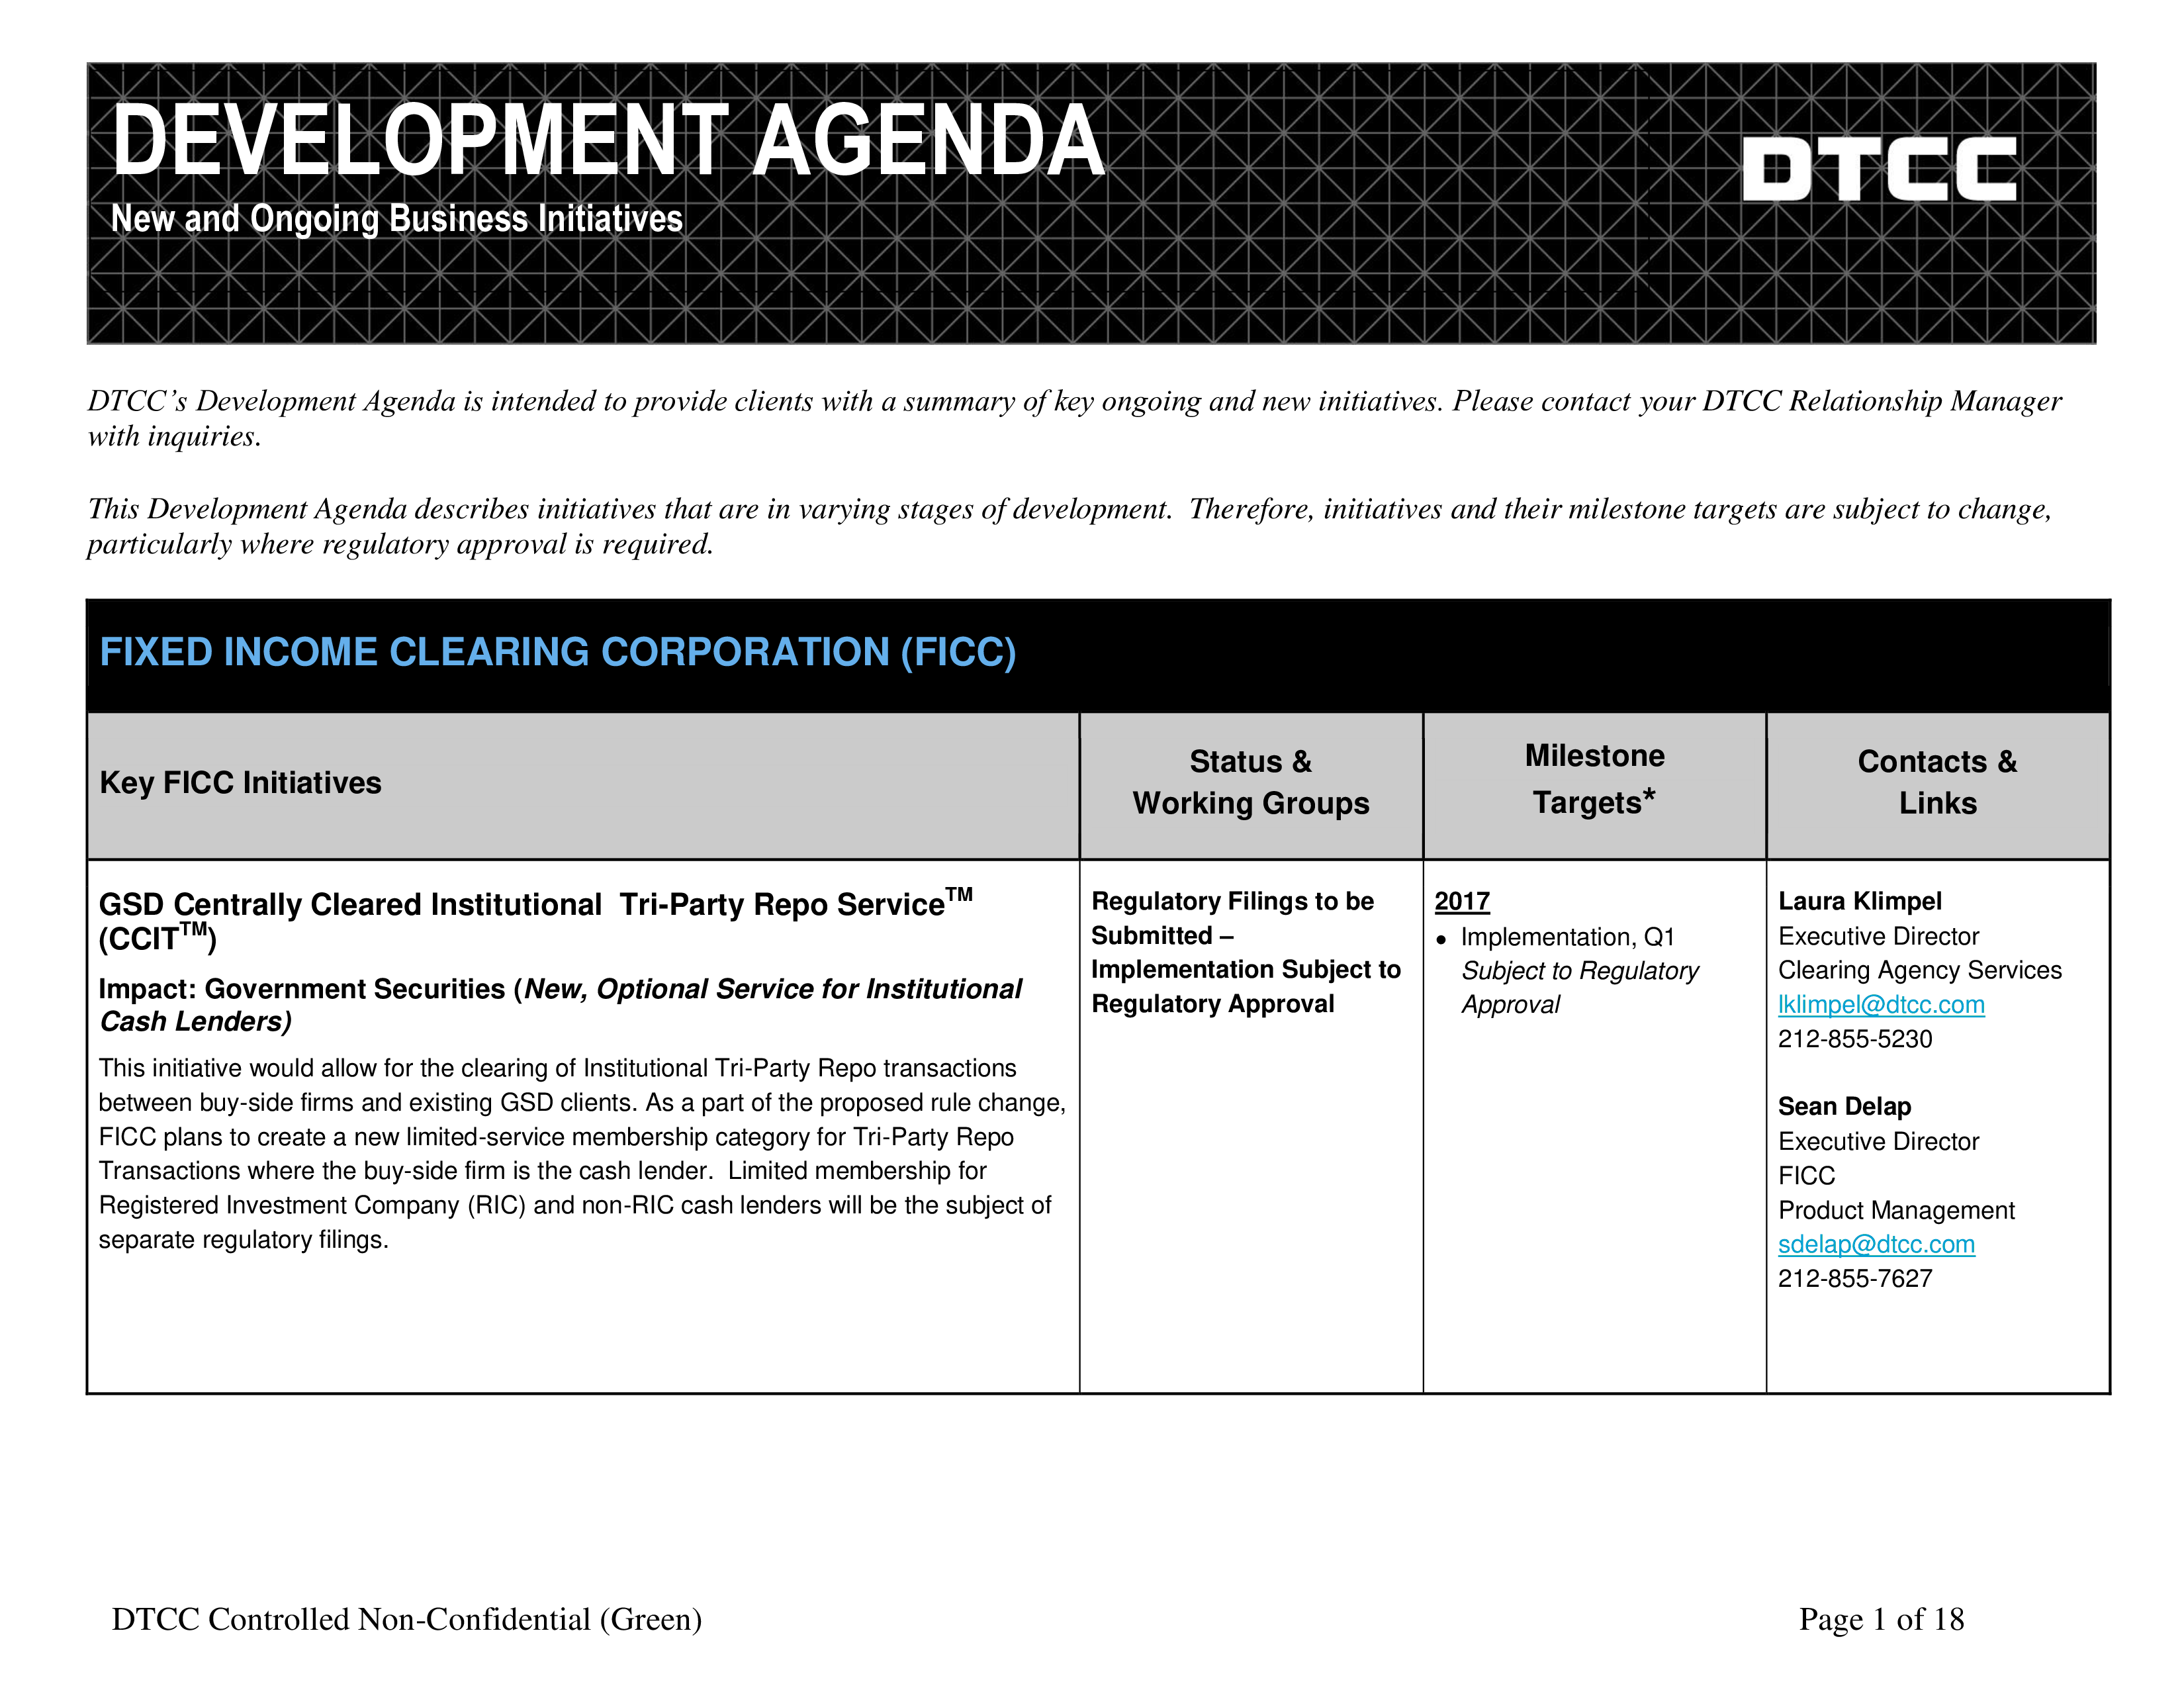 Development Agenda Guide 模板